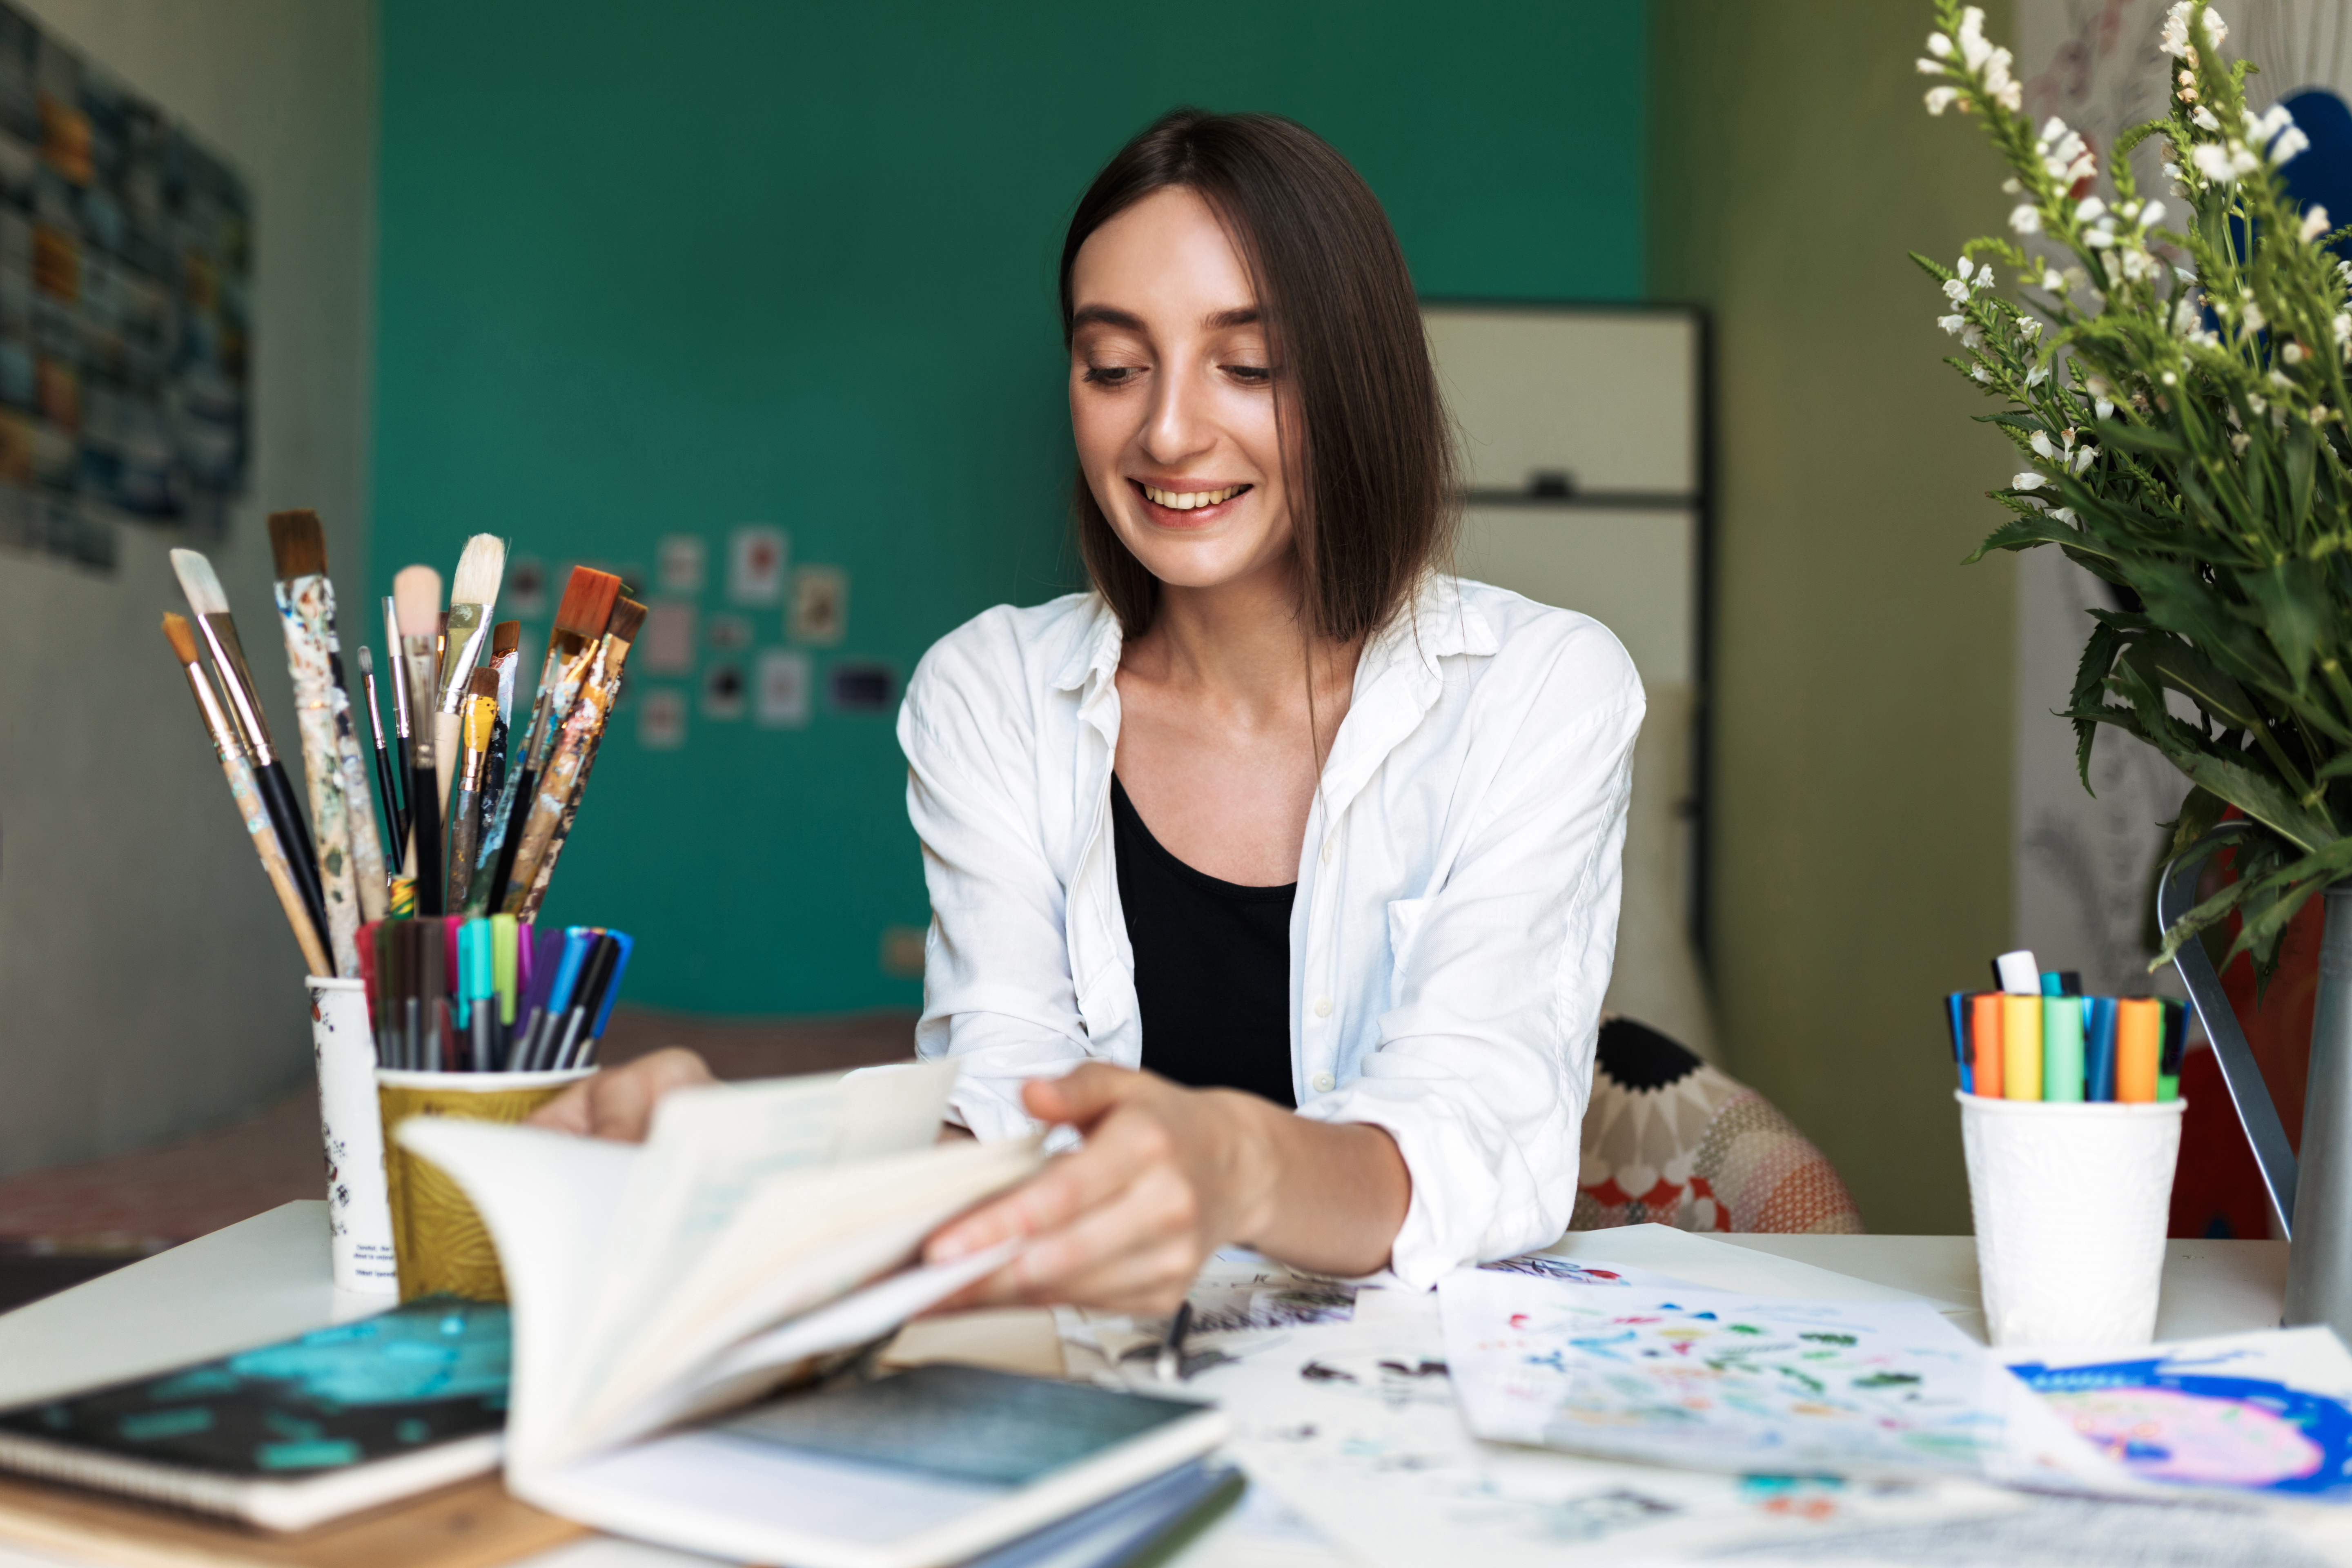 Jeune femme souriante assise à un bureau en train de peinturer